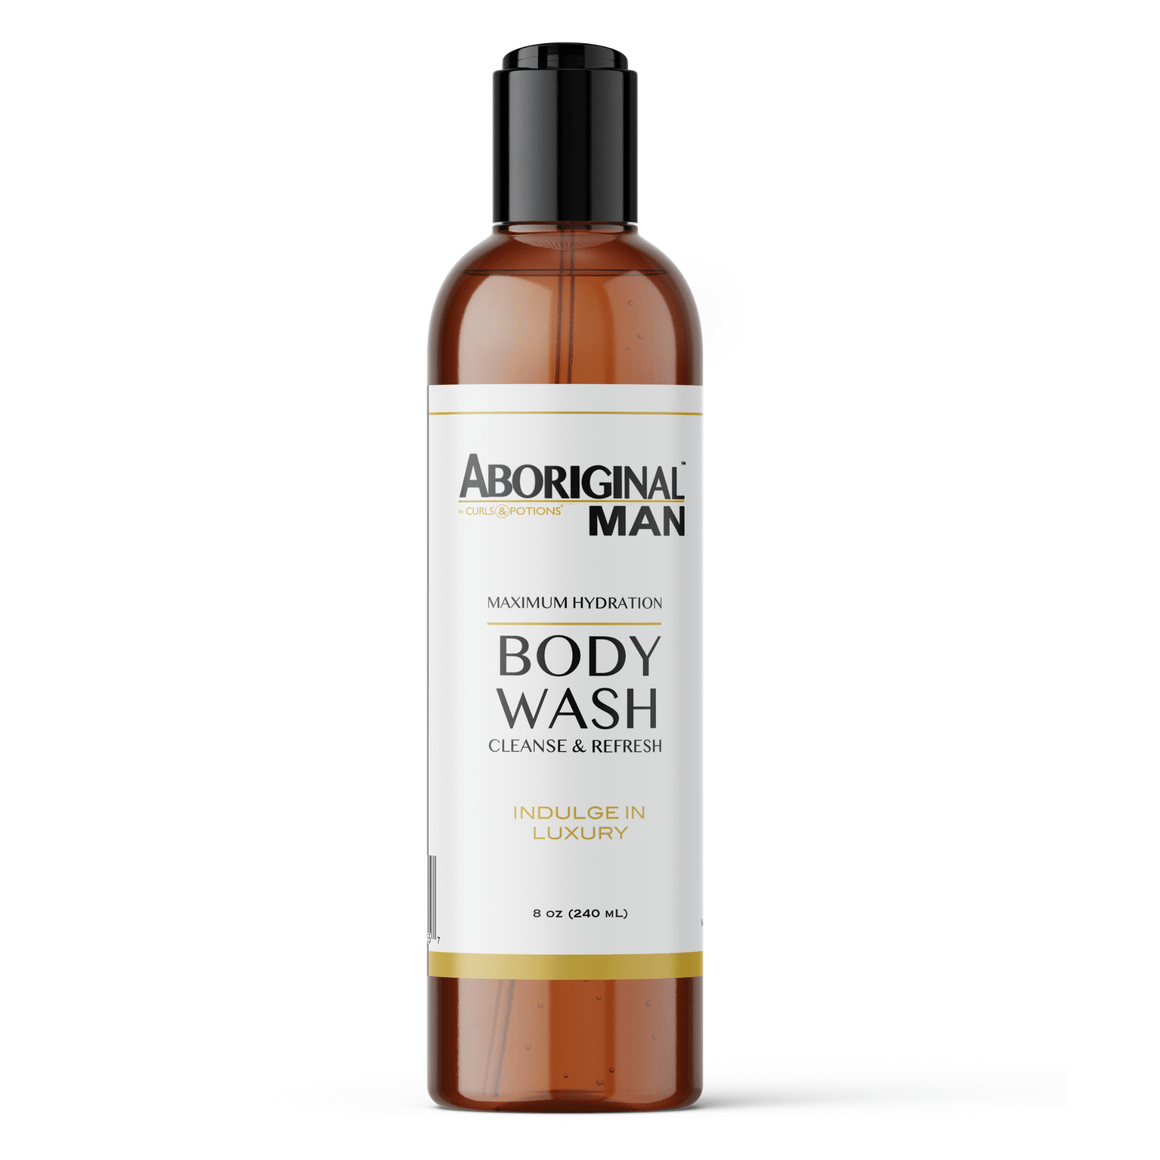 Aboriginal Man Premium Body Wash